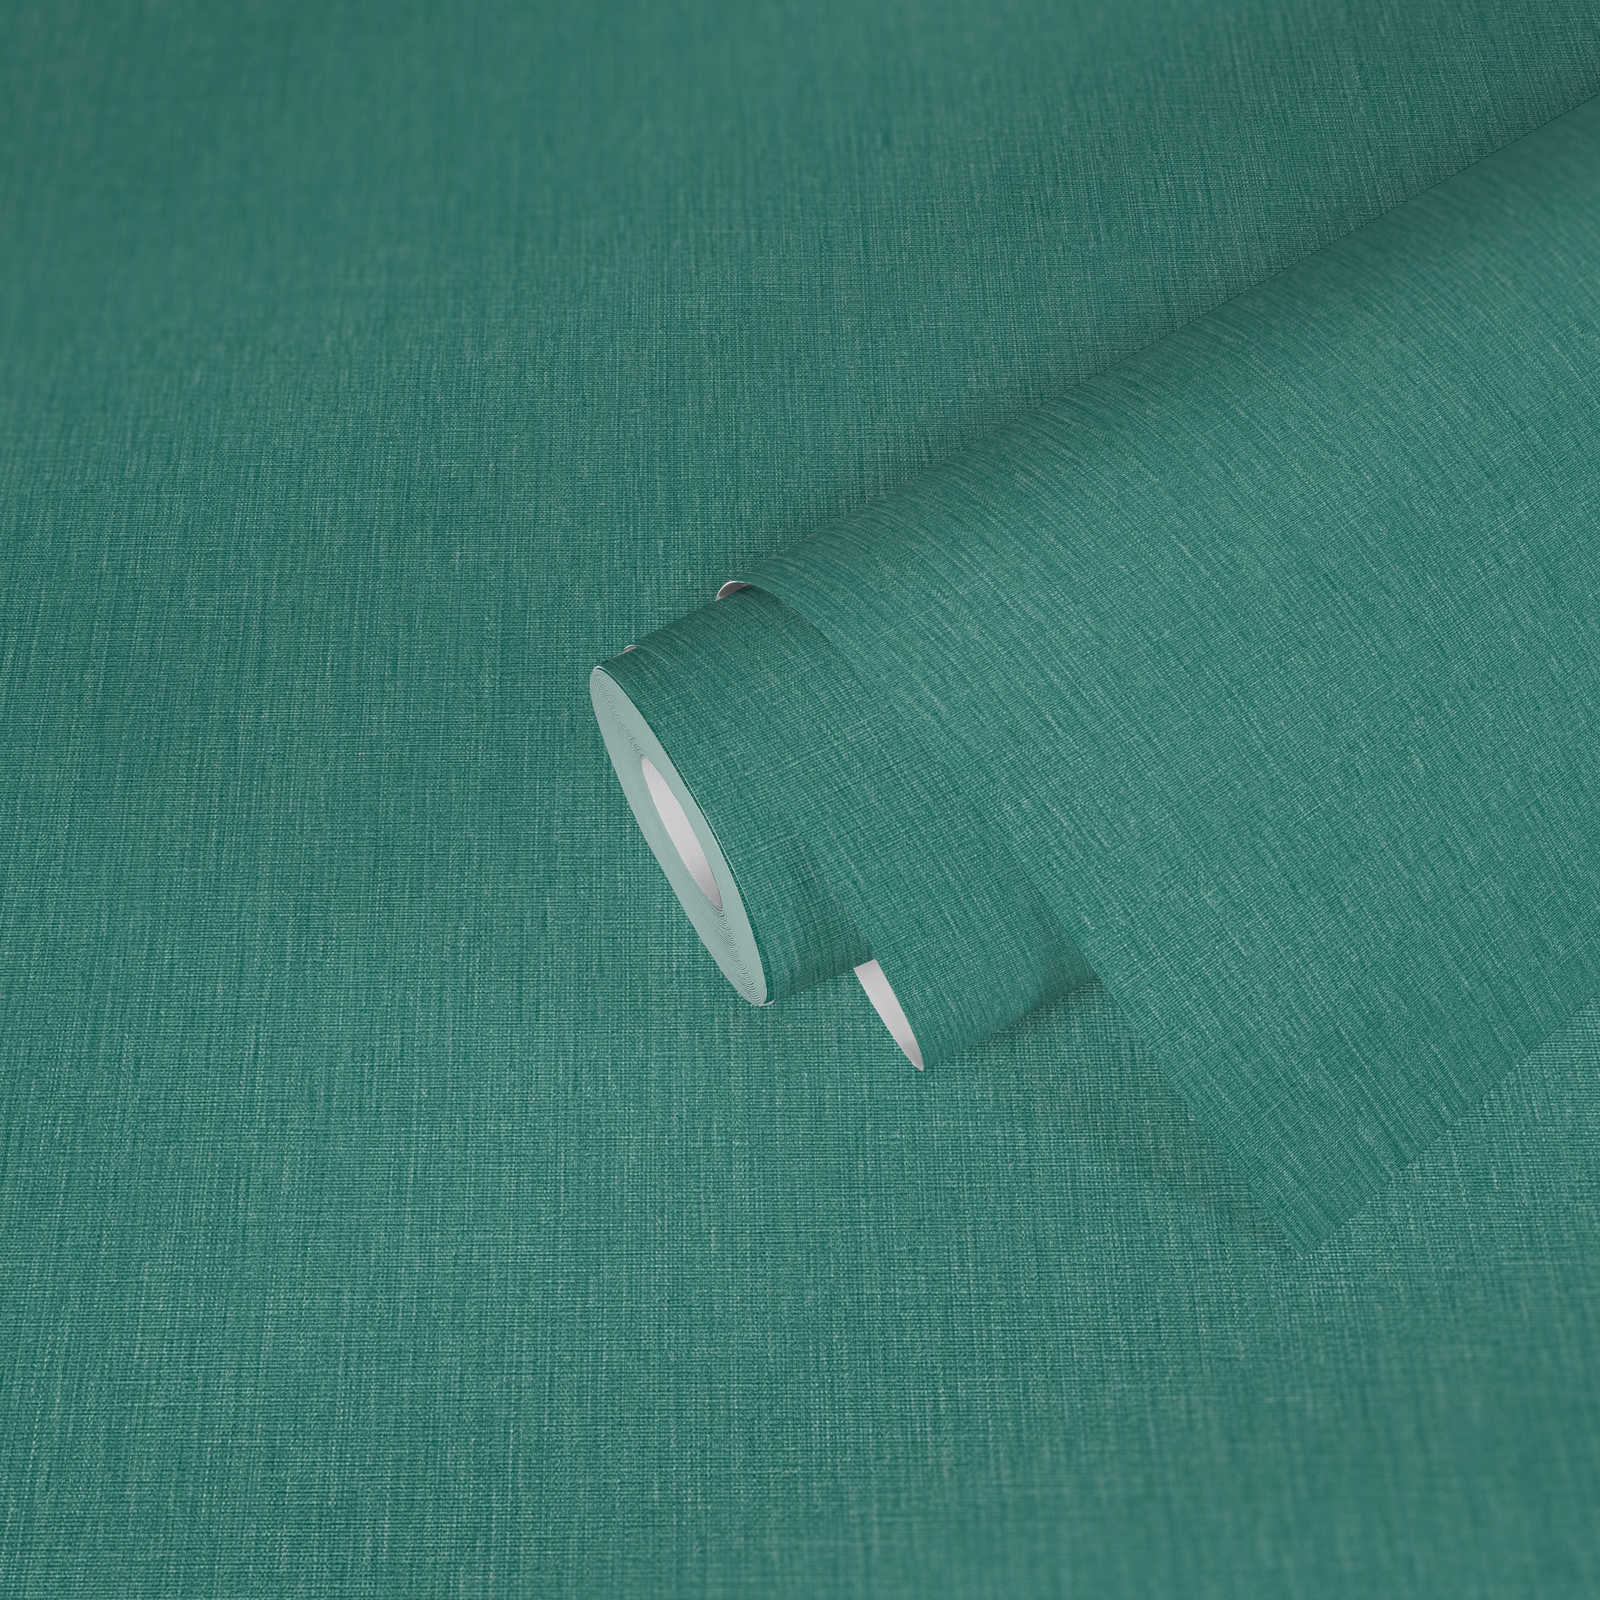             Eenheidsbehang met textuur op vlies in matte look - groen, blauw
        